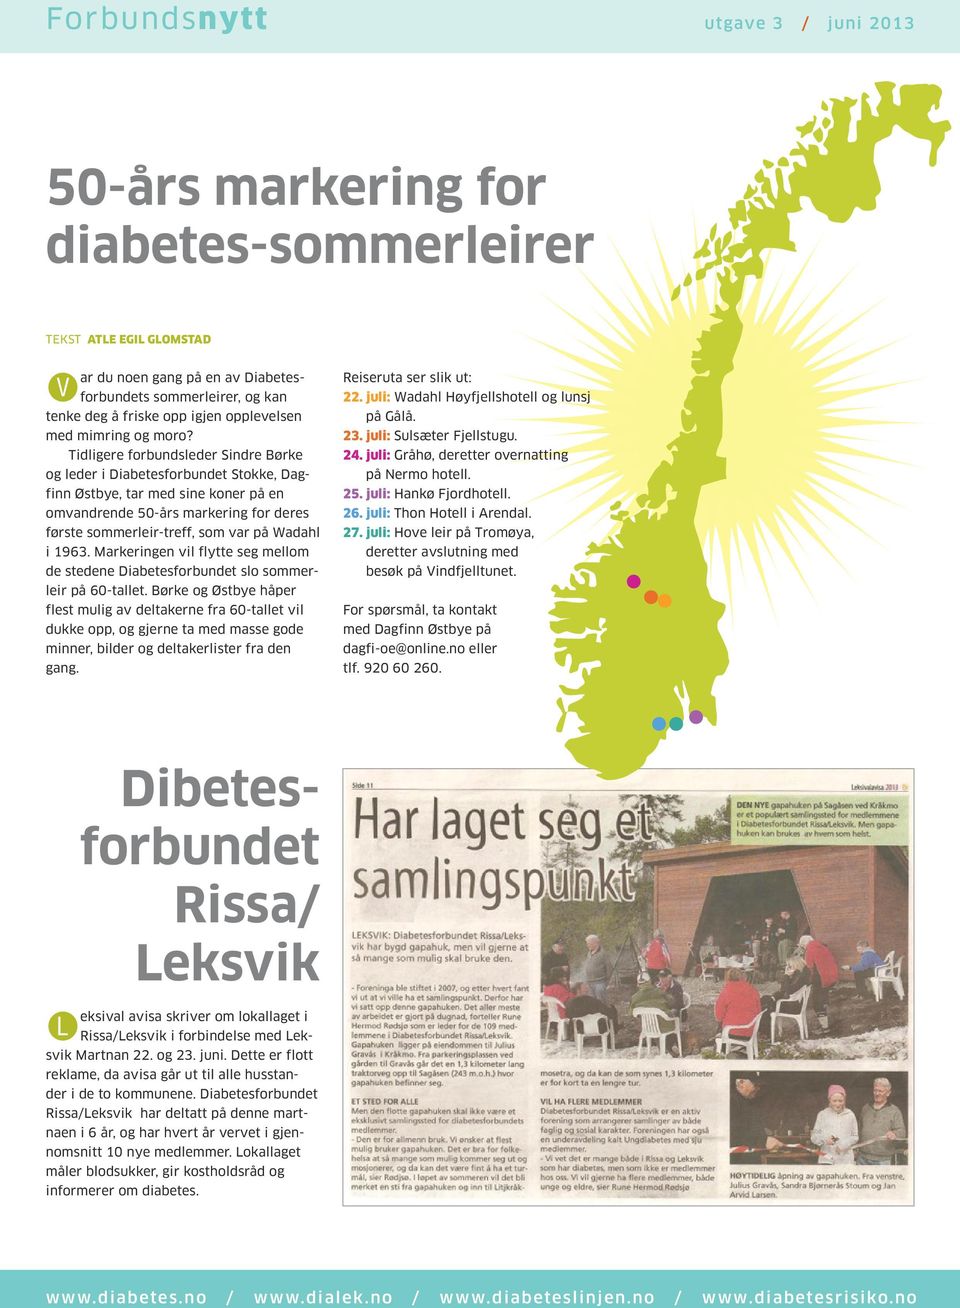 1963. Markeringen vil flytte seg mellom de stedene Diabetesforbundet slo sommerleir på 60-tallet.